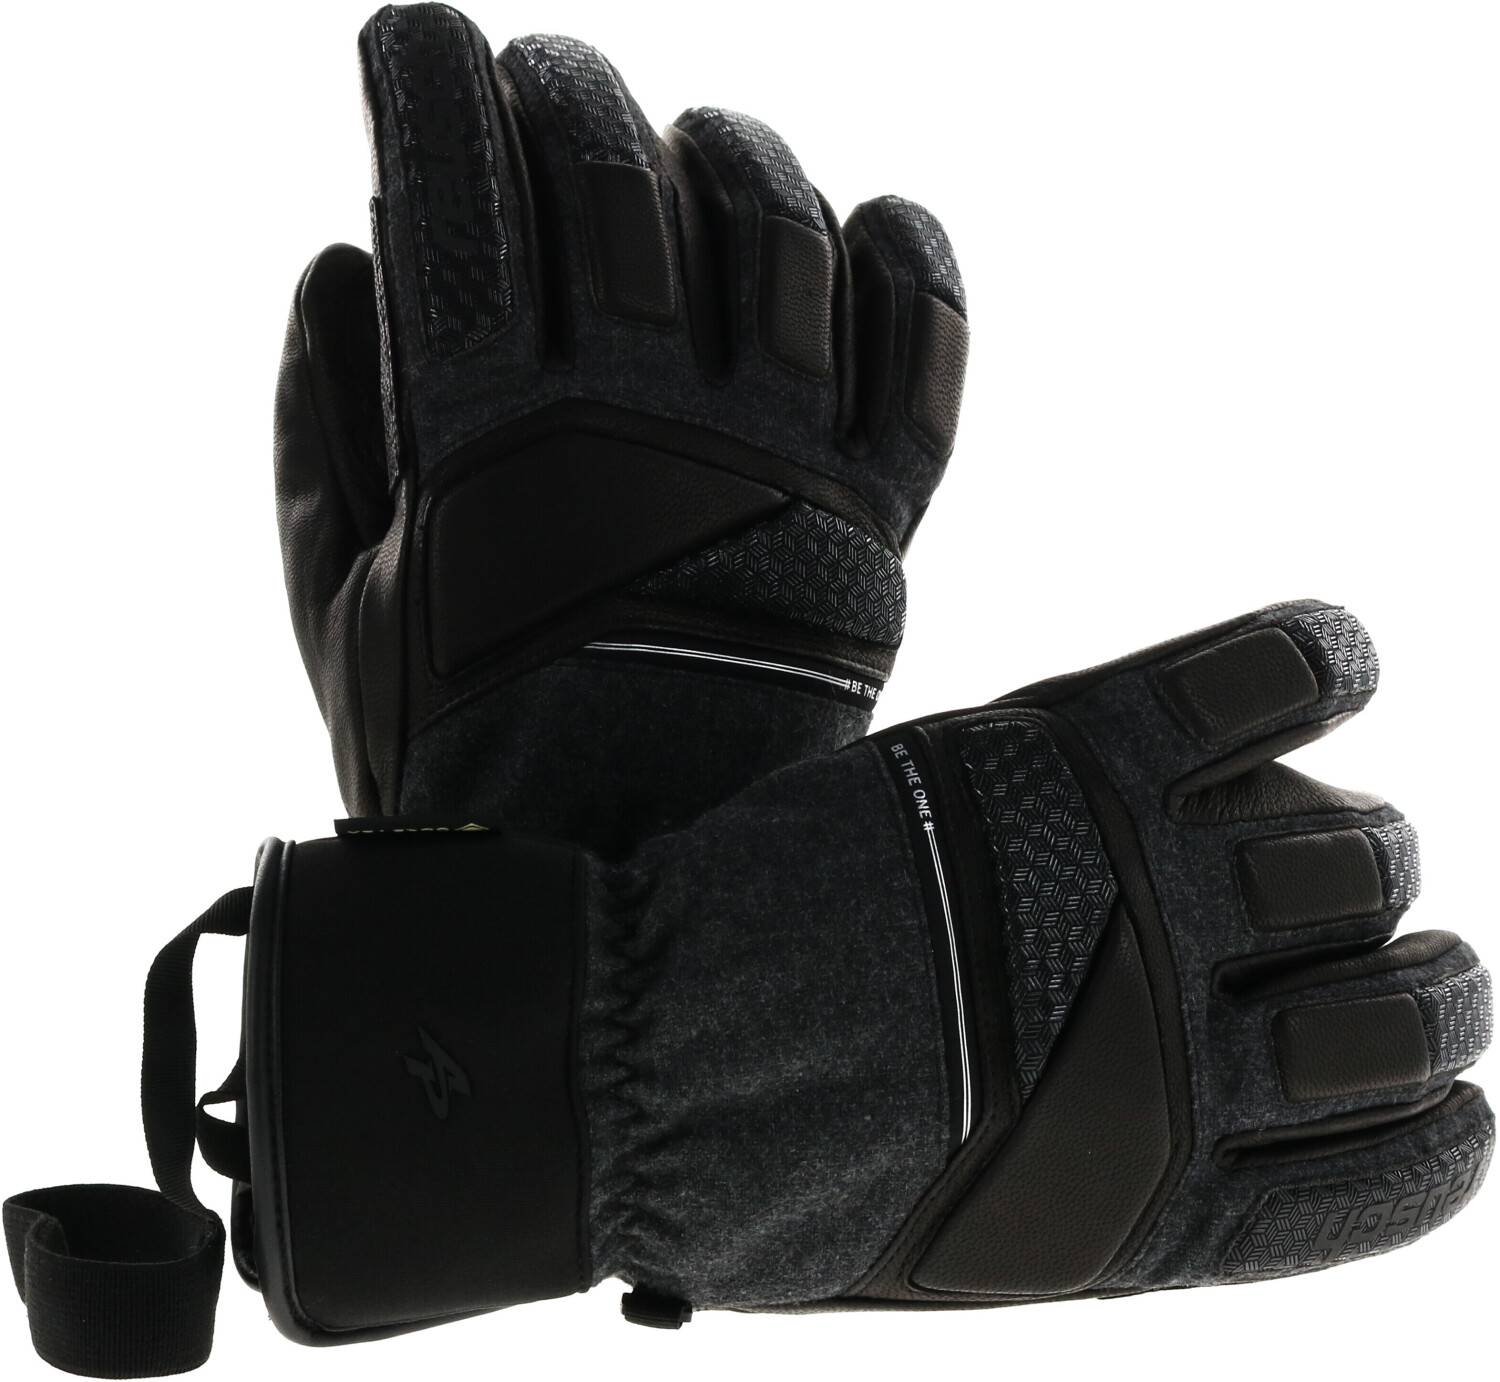 Reusch Alexis Pinturault GTX Ski Gloves black/grey alpine melan ab 127,51 €  | Preisvergleich bei